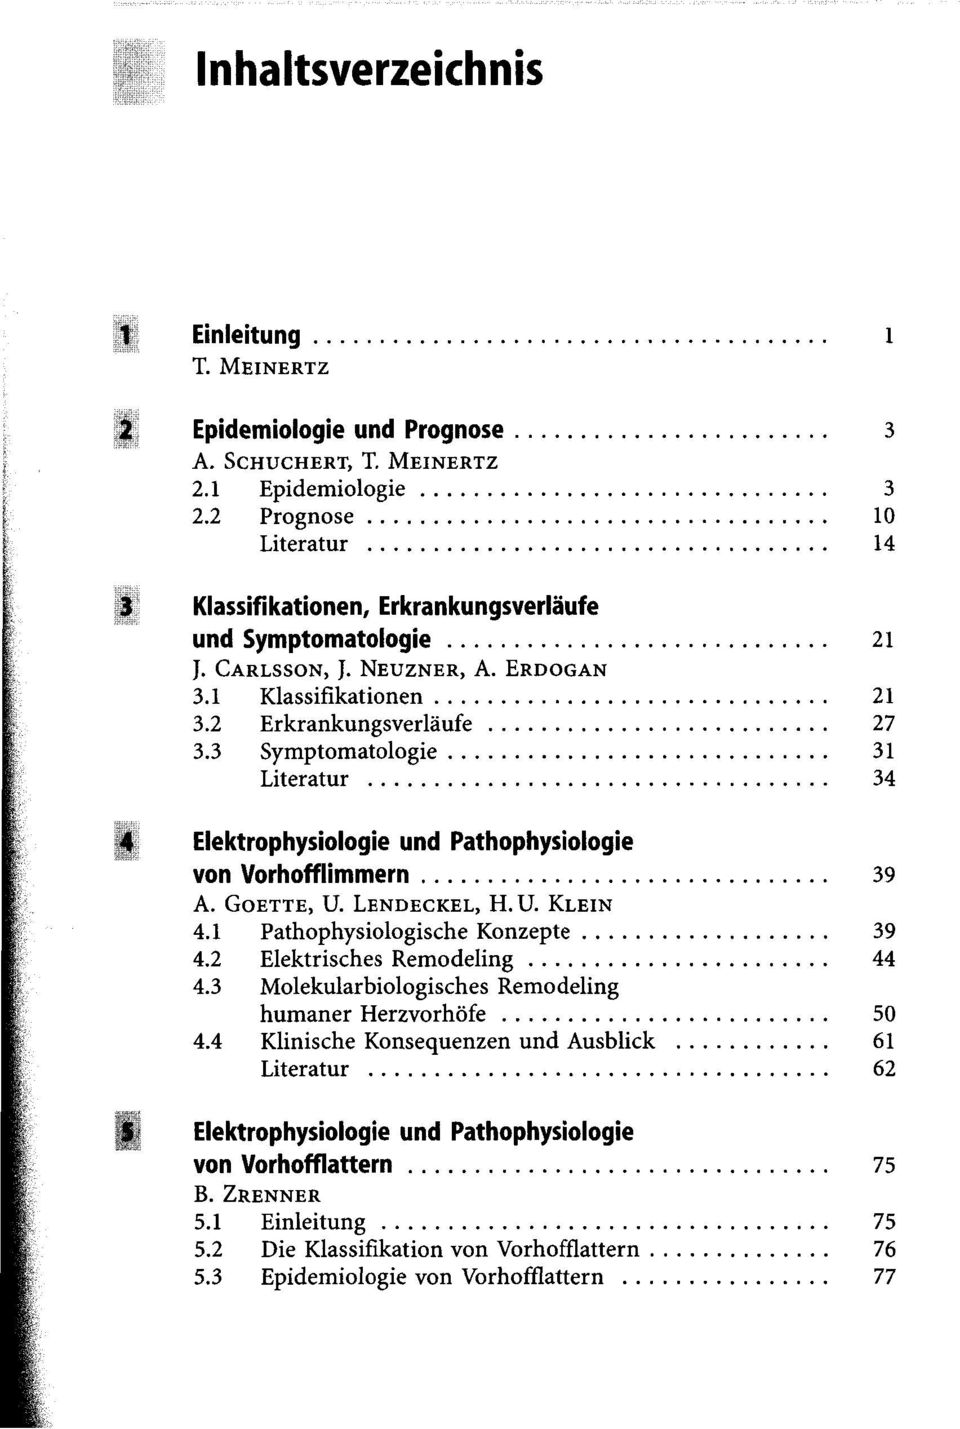 3 Symptomatologie 31 Literatur 34 j j Elektrophysiologie und Pathophysiologie von Vorhofflimmern 39 A. GOETTE, U. LENDECKEL, H. U. KLEIN 4.1 Pathophysiologische Konzepte 39 4.